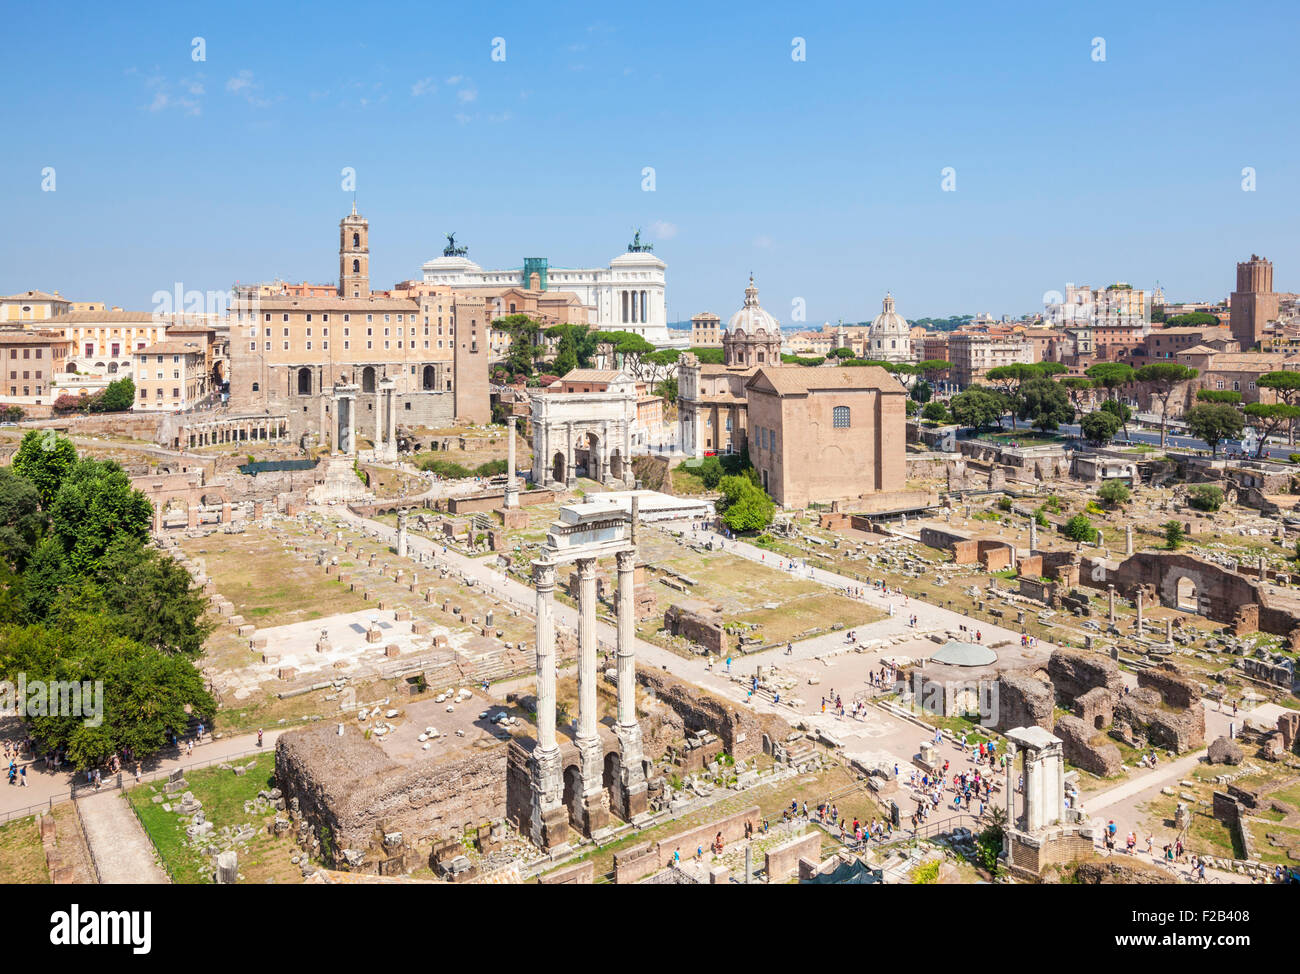 Forum romain et toits de Rome la colline du Palatin Italie Roma Lazio Rome vue Italie Europe de l'UE Banque D'Images